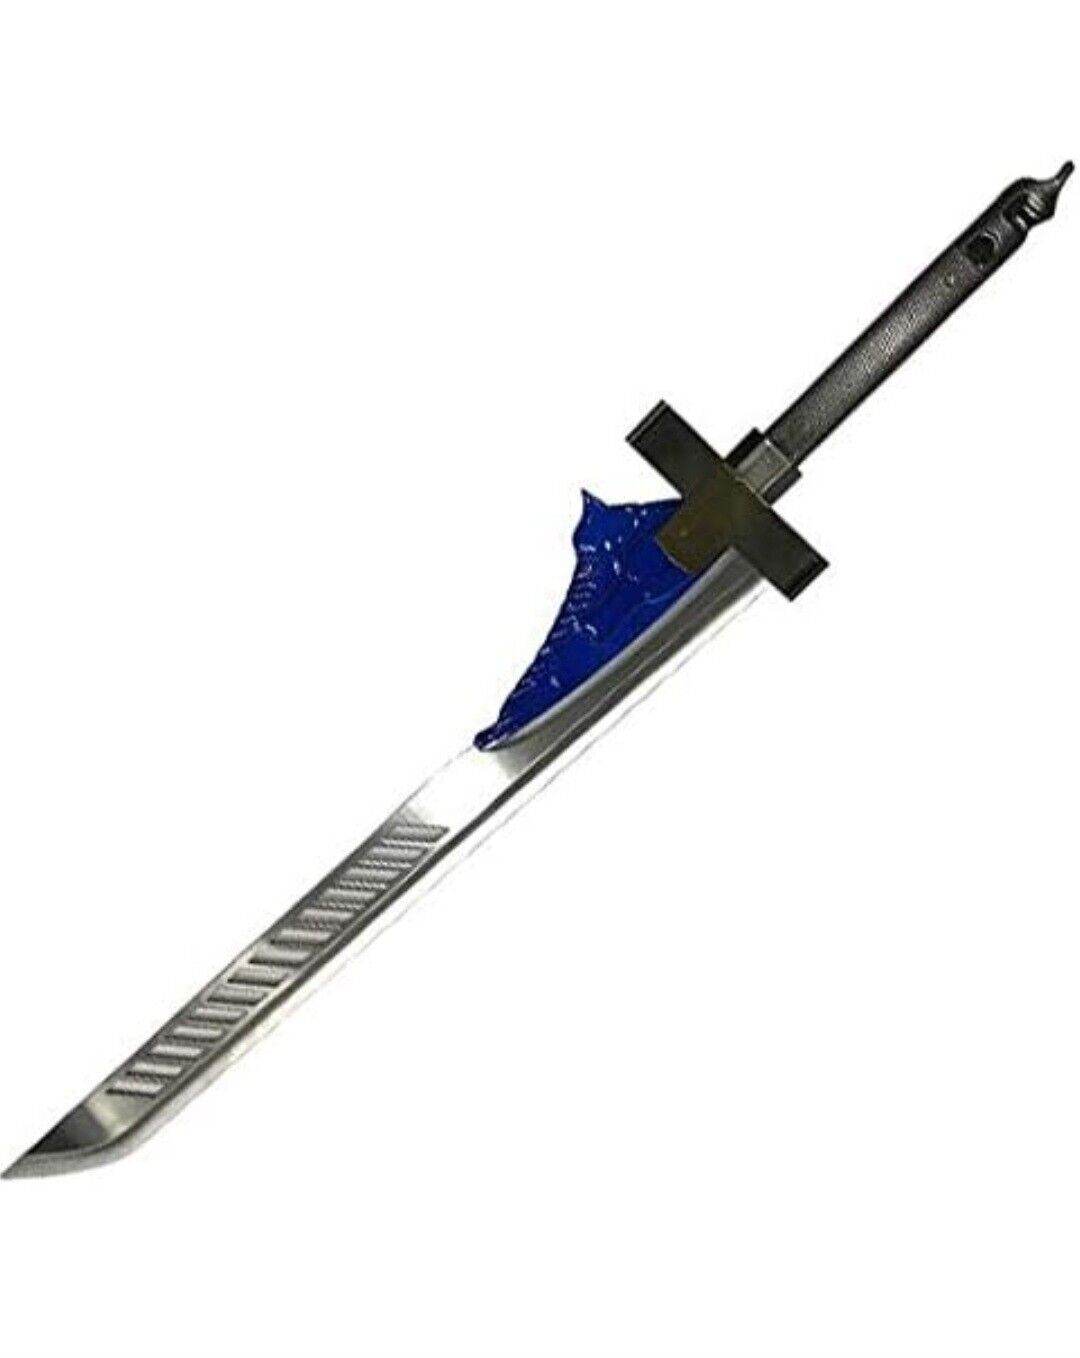 RealFireNSteel - Bolt-Caster Exotic Sword